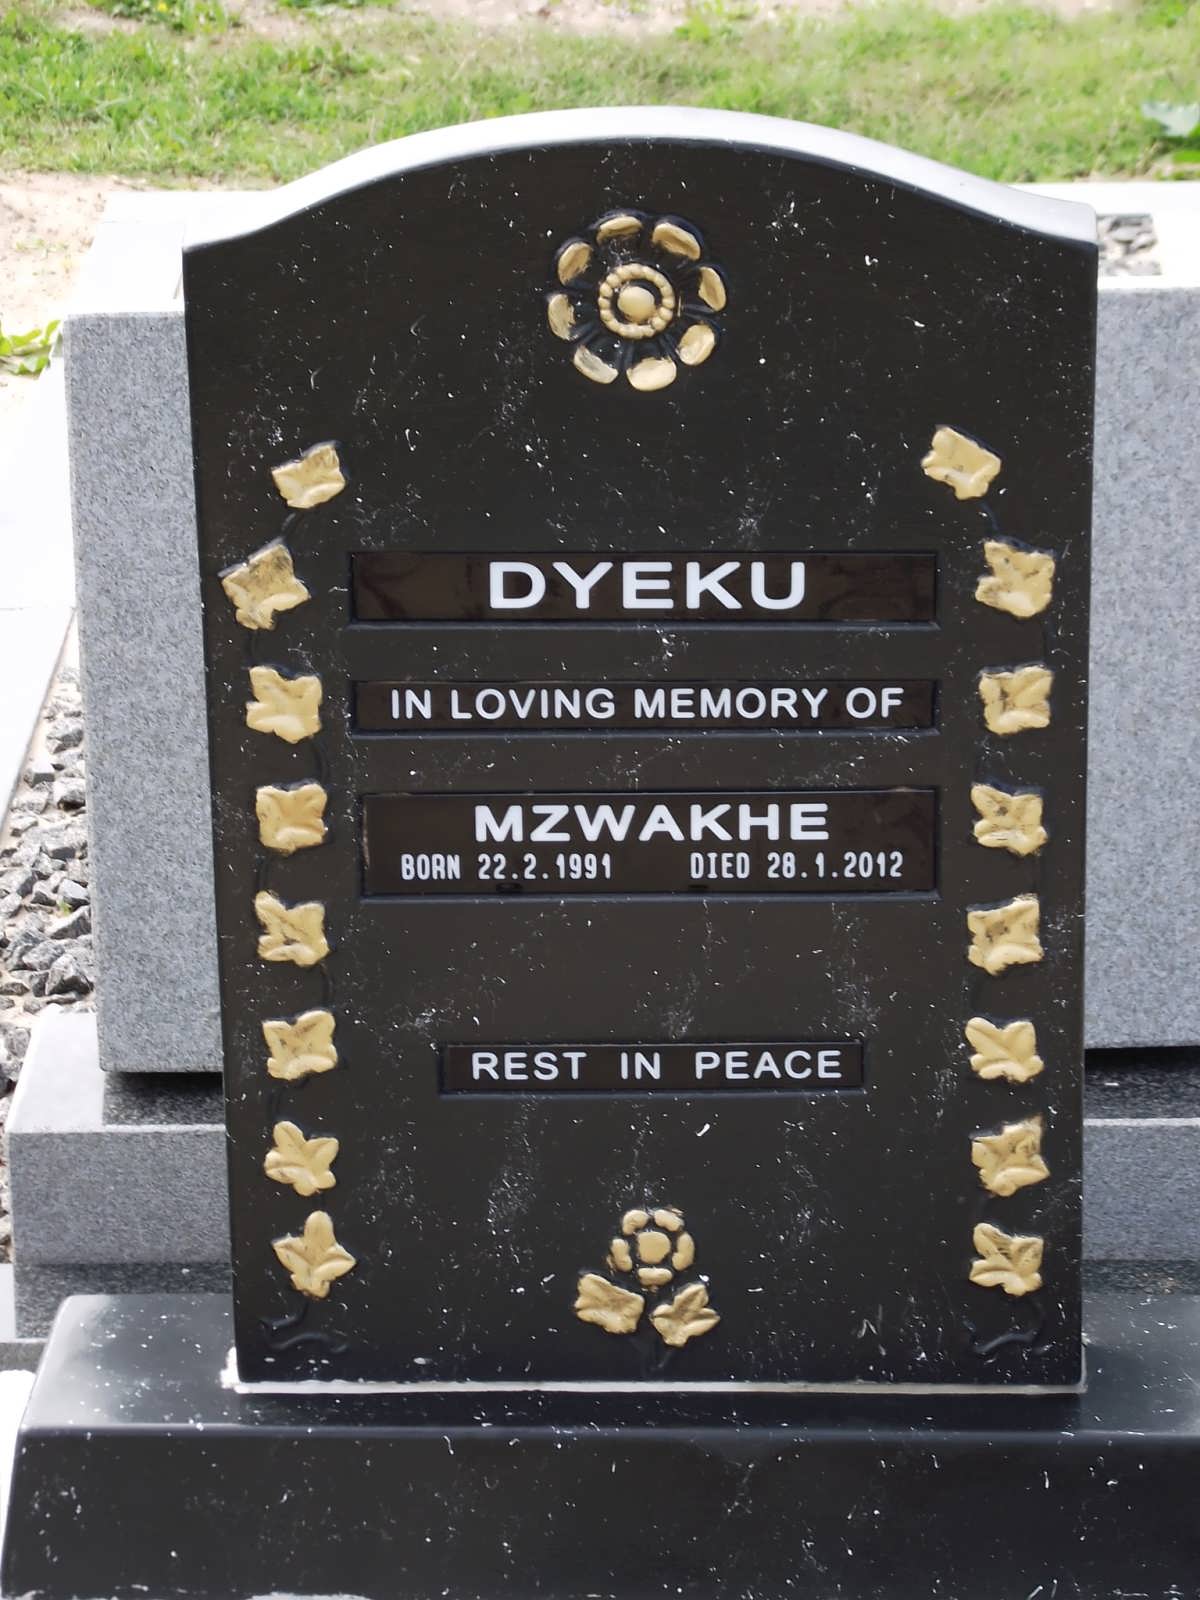 DYEKU Mzwakhe 1991-2012